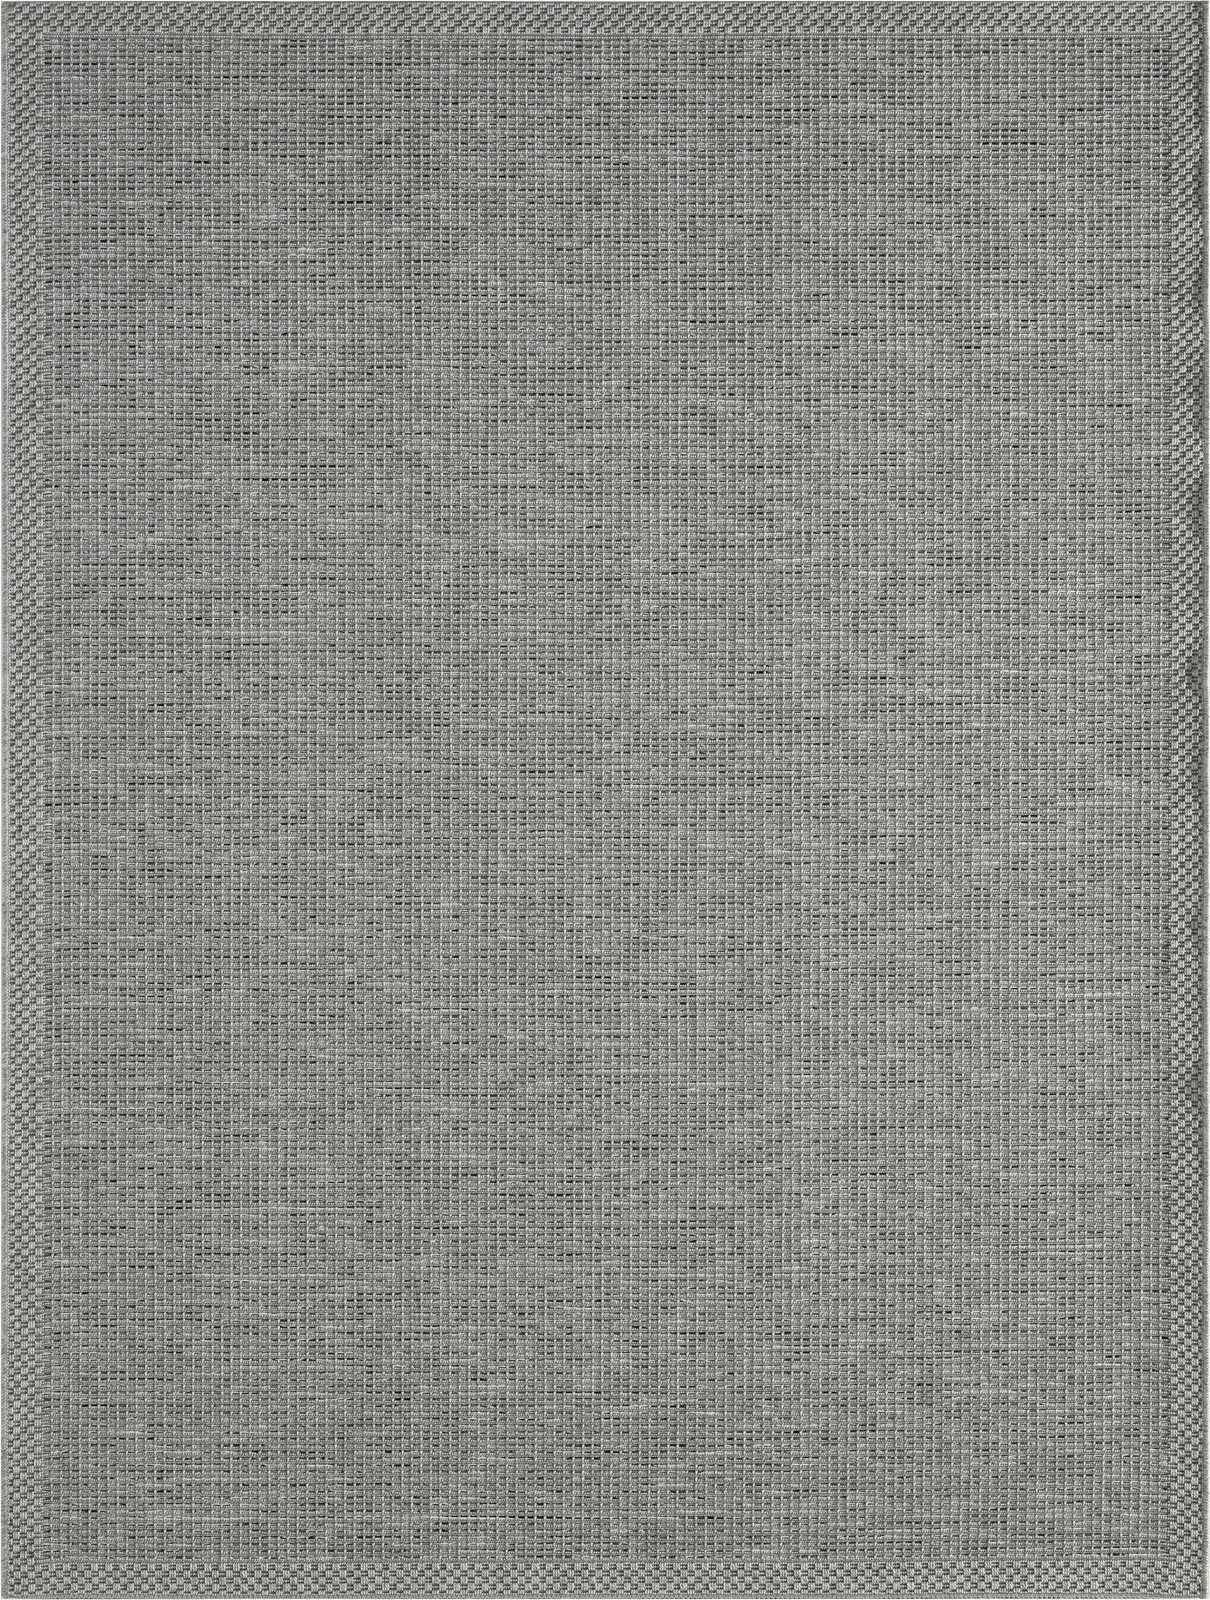             Schlichter Outdoor Teppich in Grau – 220 x 160 cm
        